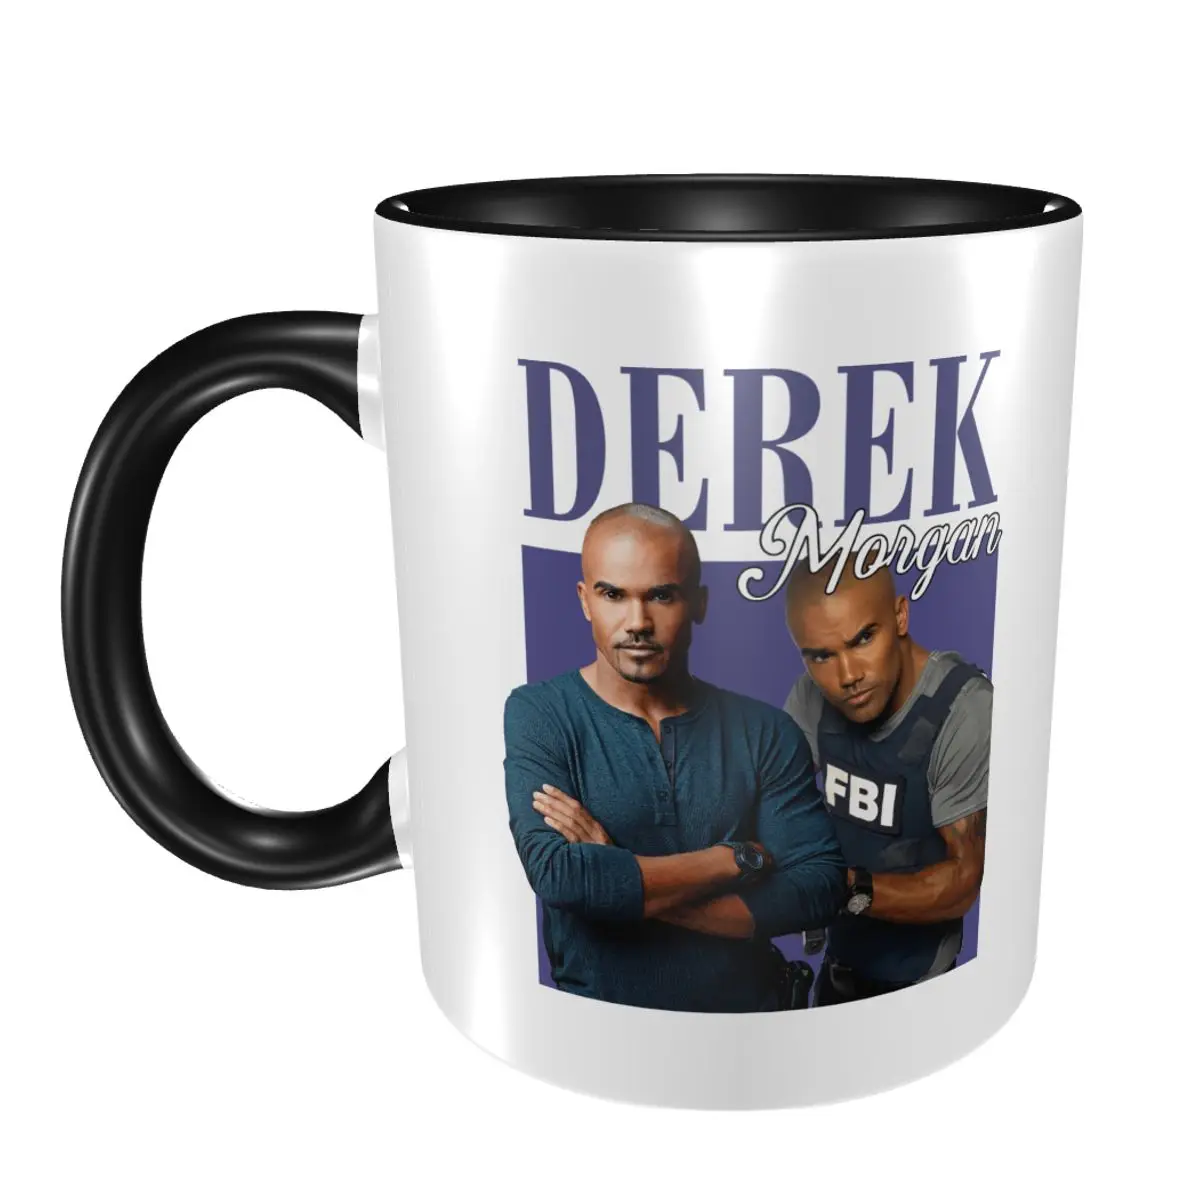 https://ae01.alicdn.com/kf/Sa5a766e76e4b4918b9d1c074c5e9544cY/A11255-Criminal-Minds-Derek-Morgan-Shemar-Moore-Mug-Tea-Cups-330ml-Drinkware-Ceramic-Mug-Personalized-Cup.jpg